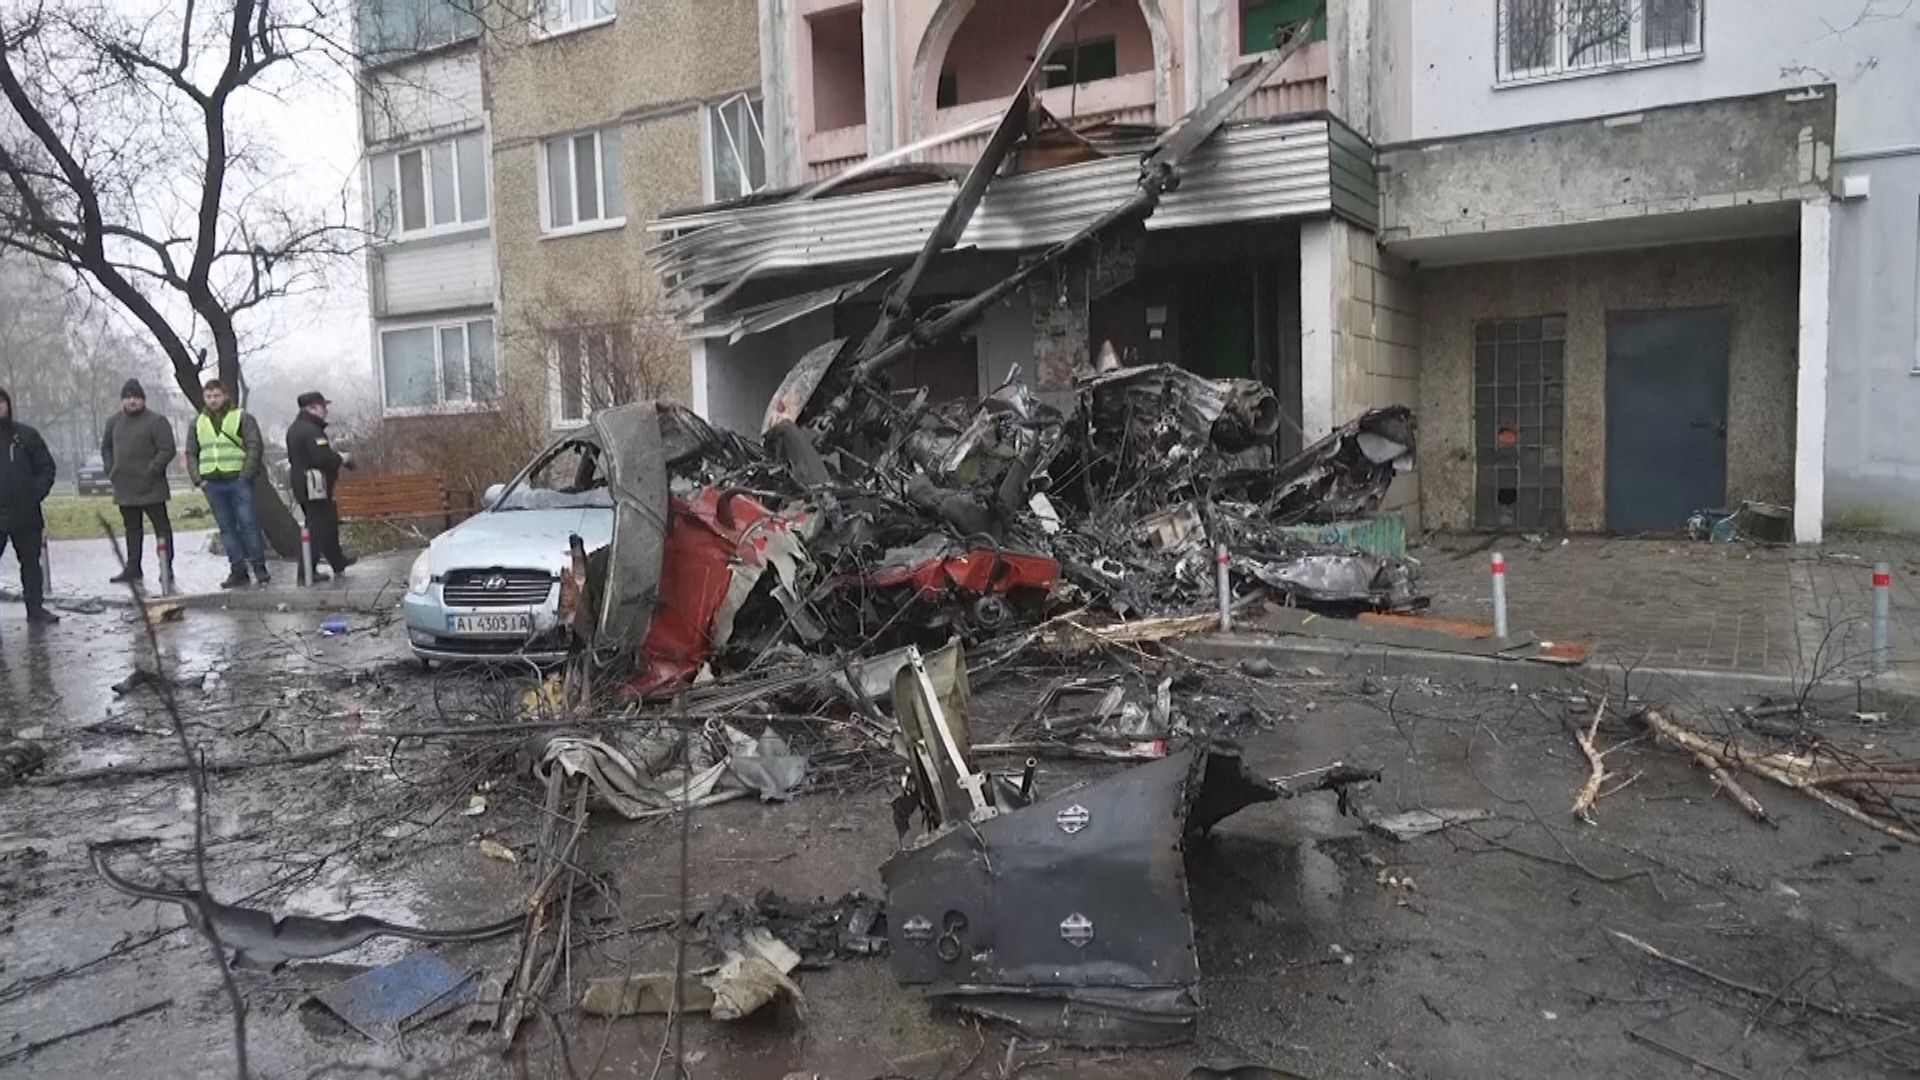 烏克蘭內政部長在直升機墜毀事故中死亡